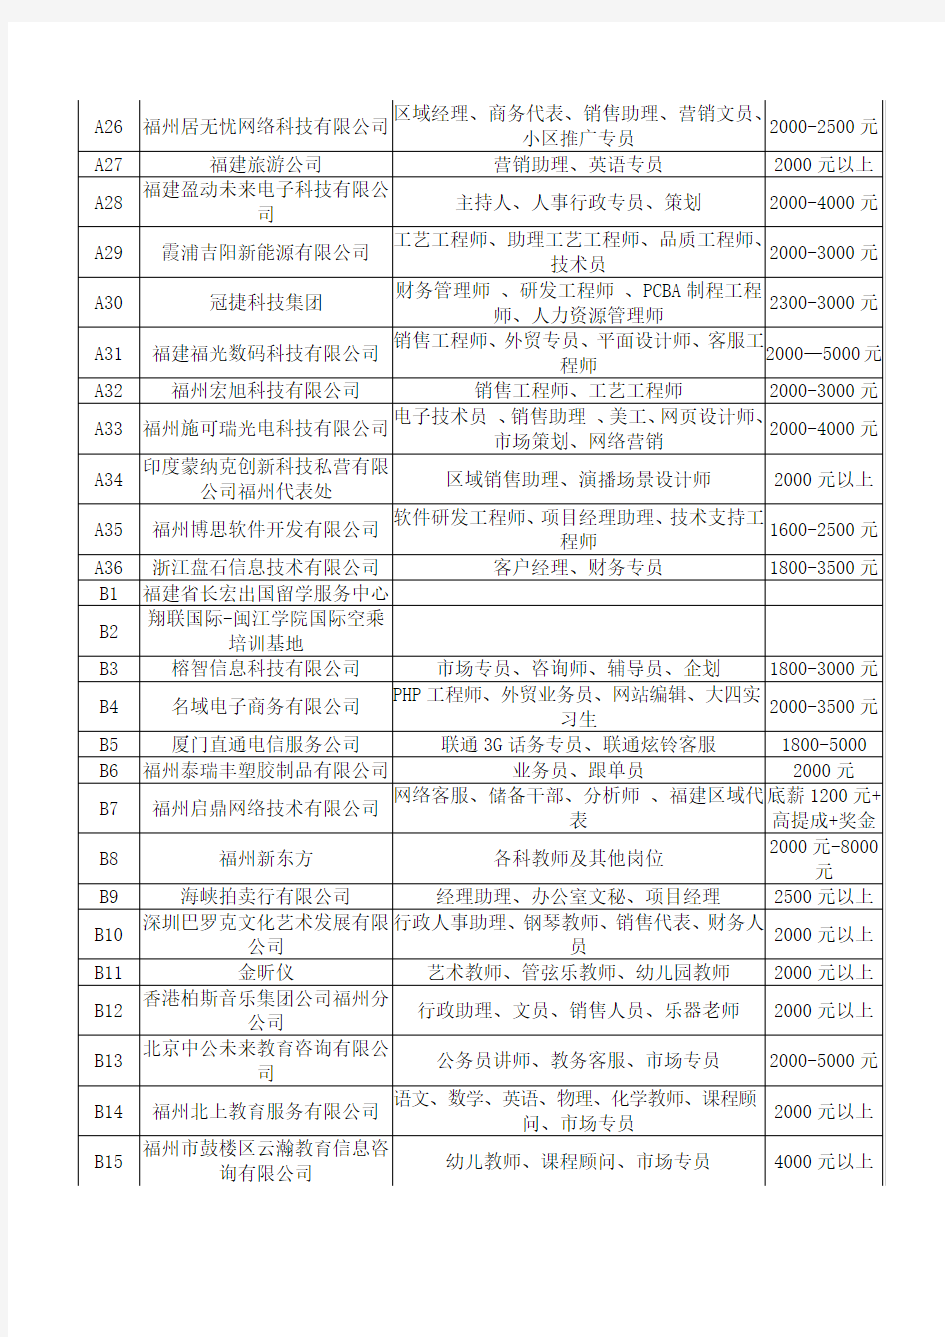 闽江学院2012年2月24日招聘会企业名单